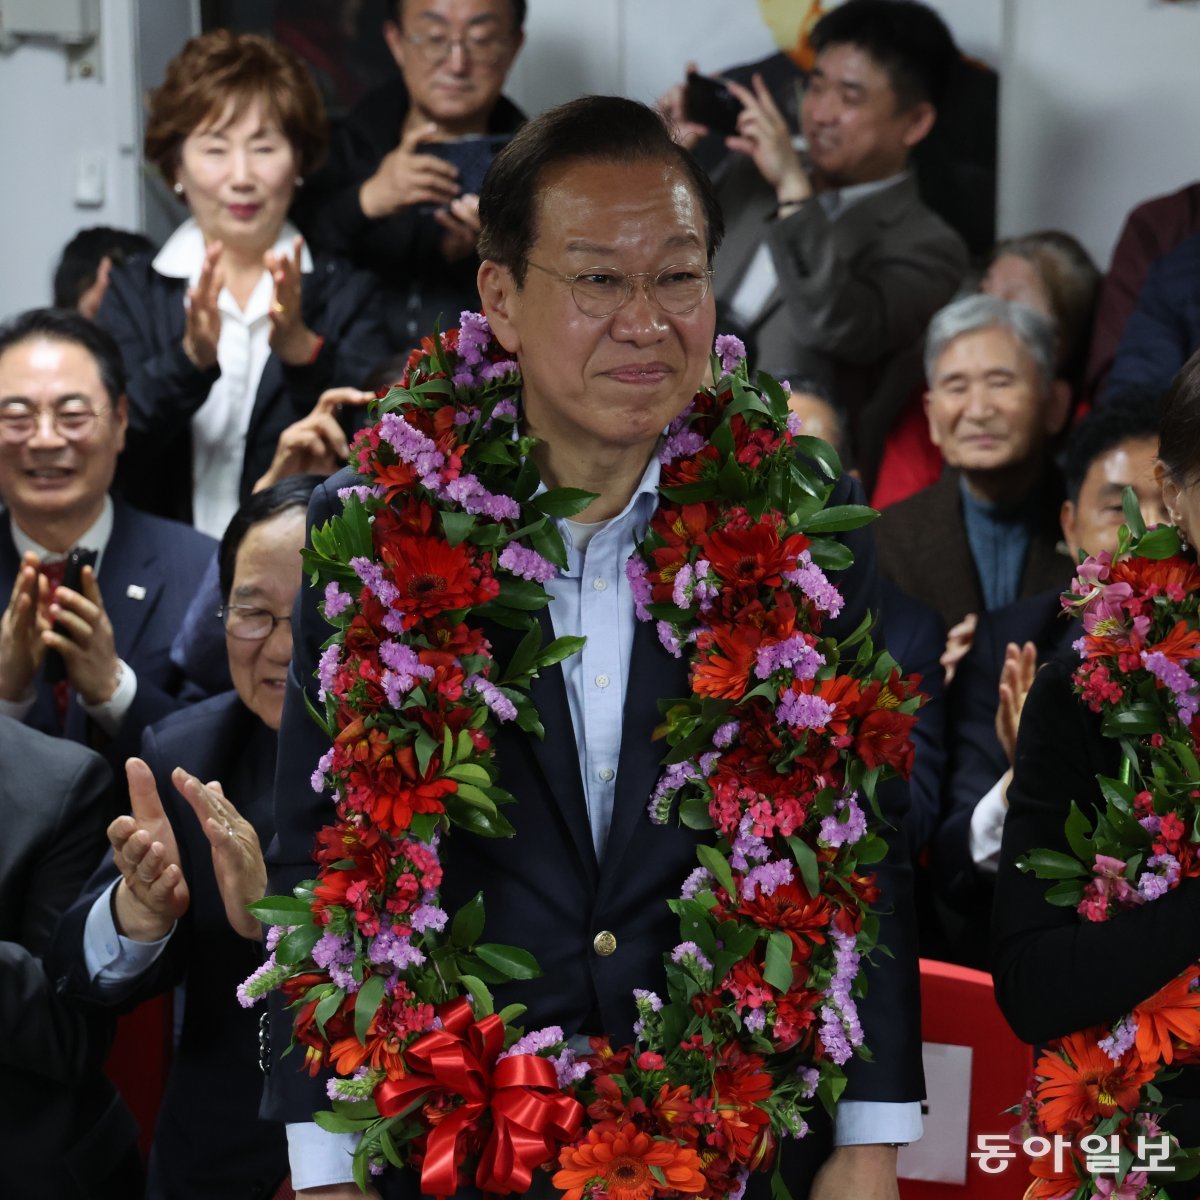 서울 용산 권영세 후보도 11일 자신의 선거사무소에서 당선이 확정된 뒤 활짝 웃고 있다. 박형기 기자 oneshot@donga.com